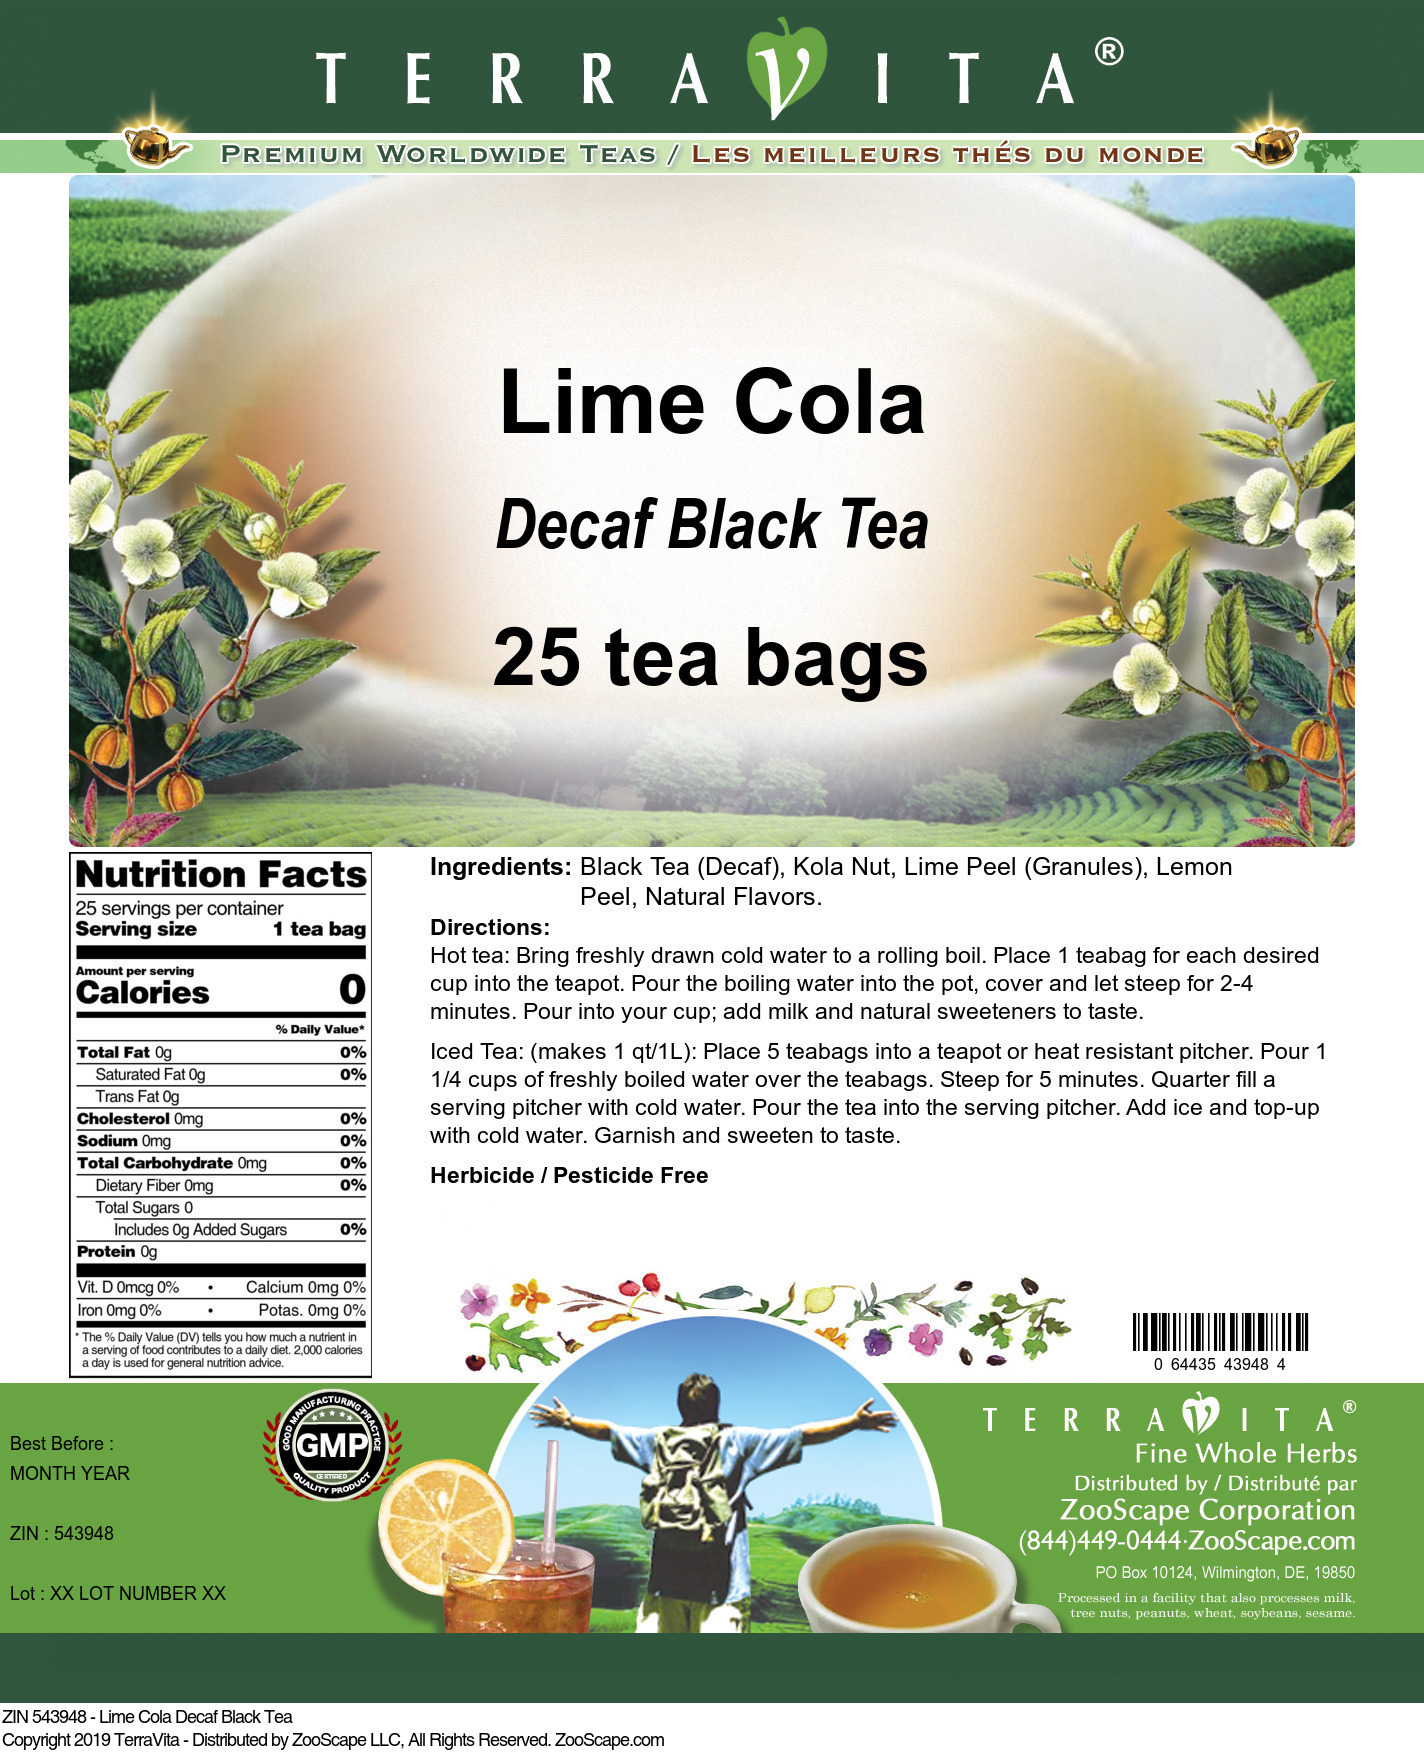 Lime Cola Decaf Black Tea - Label